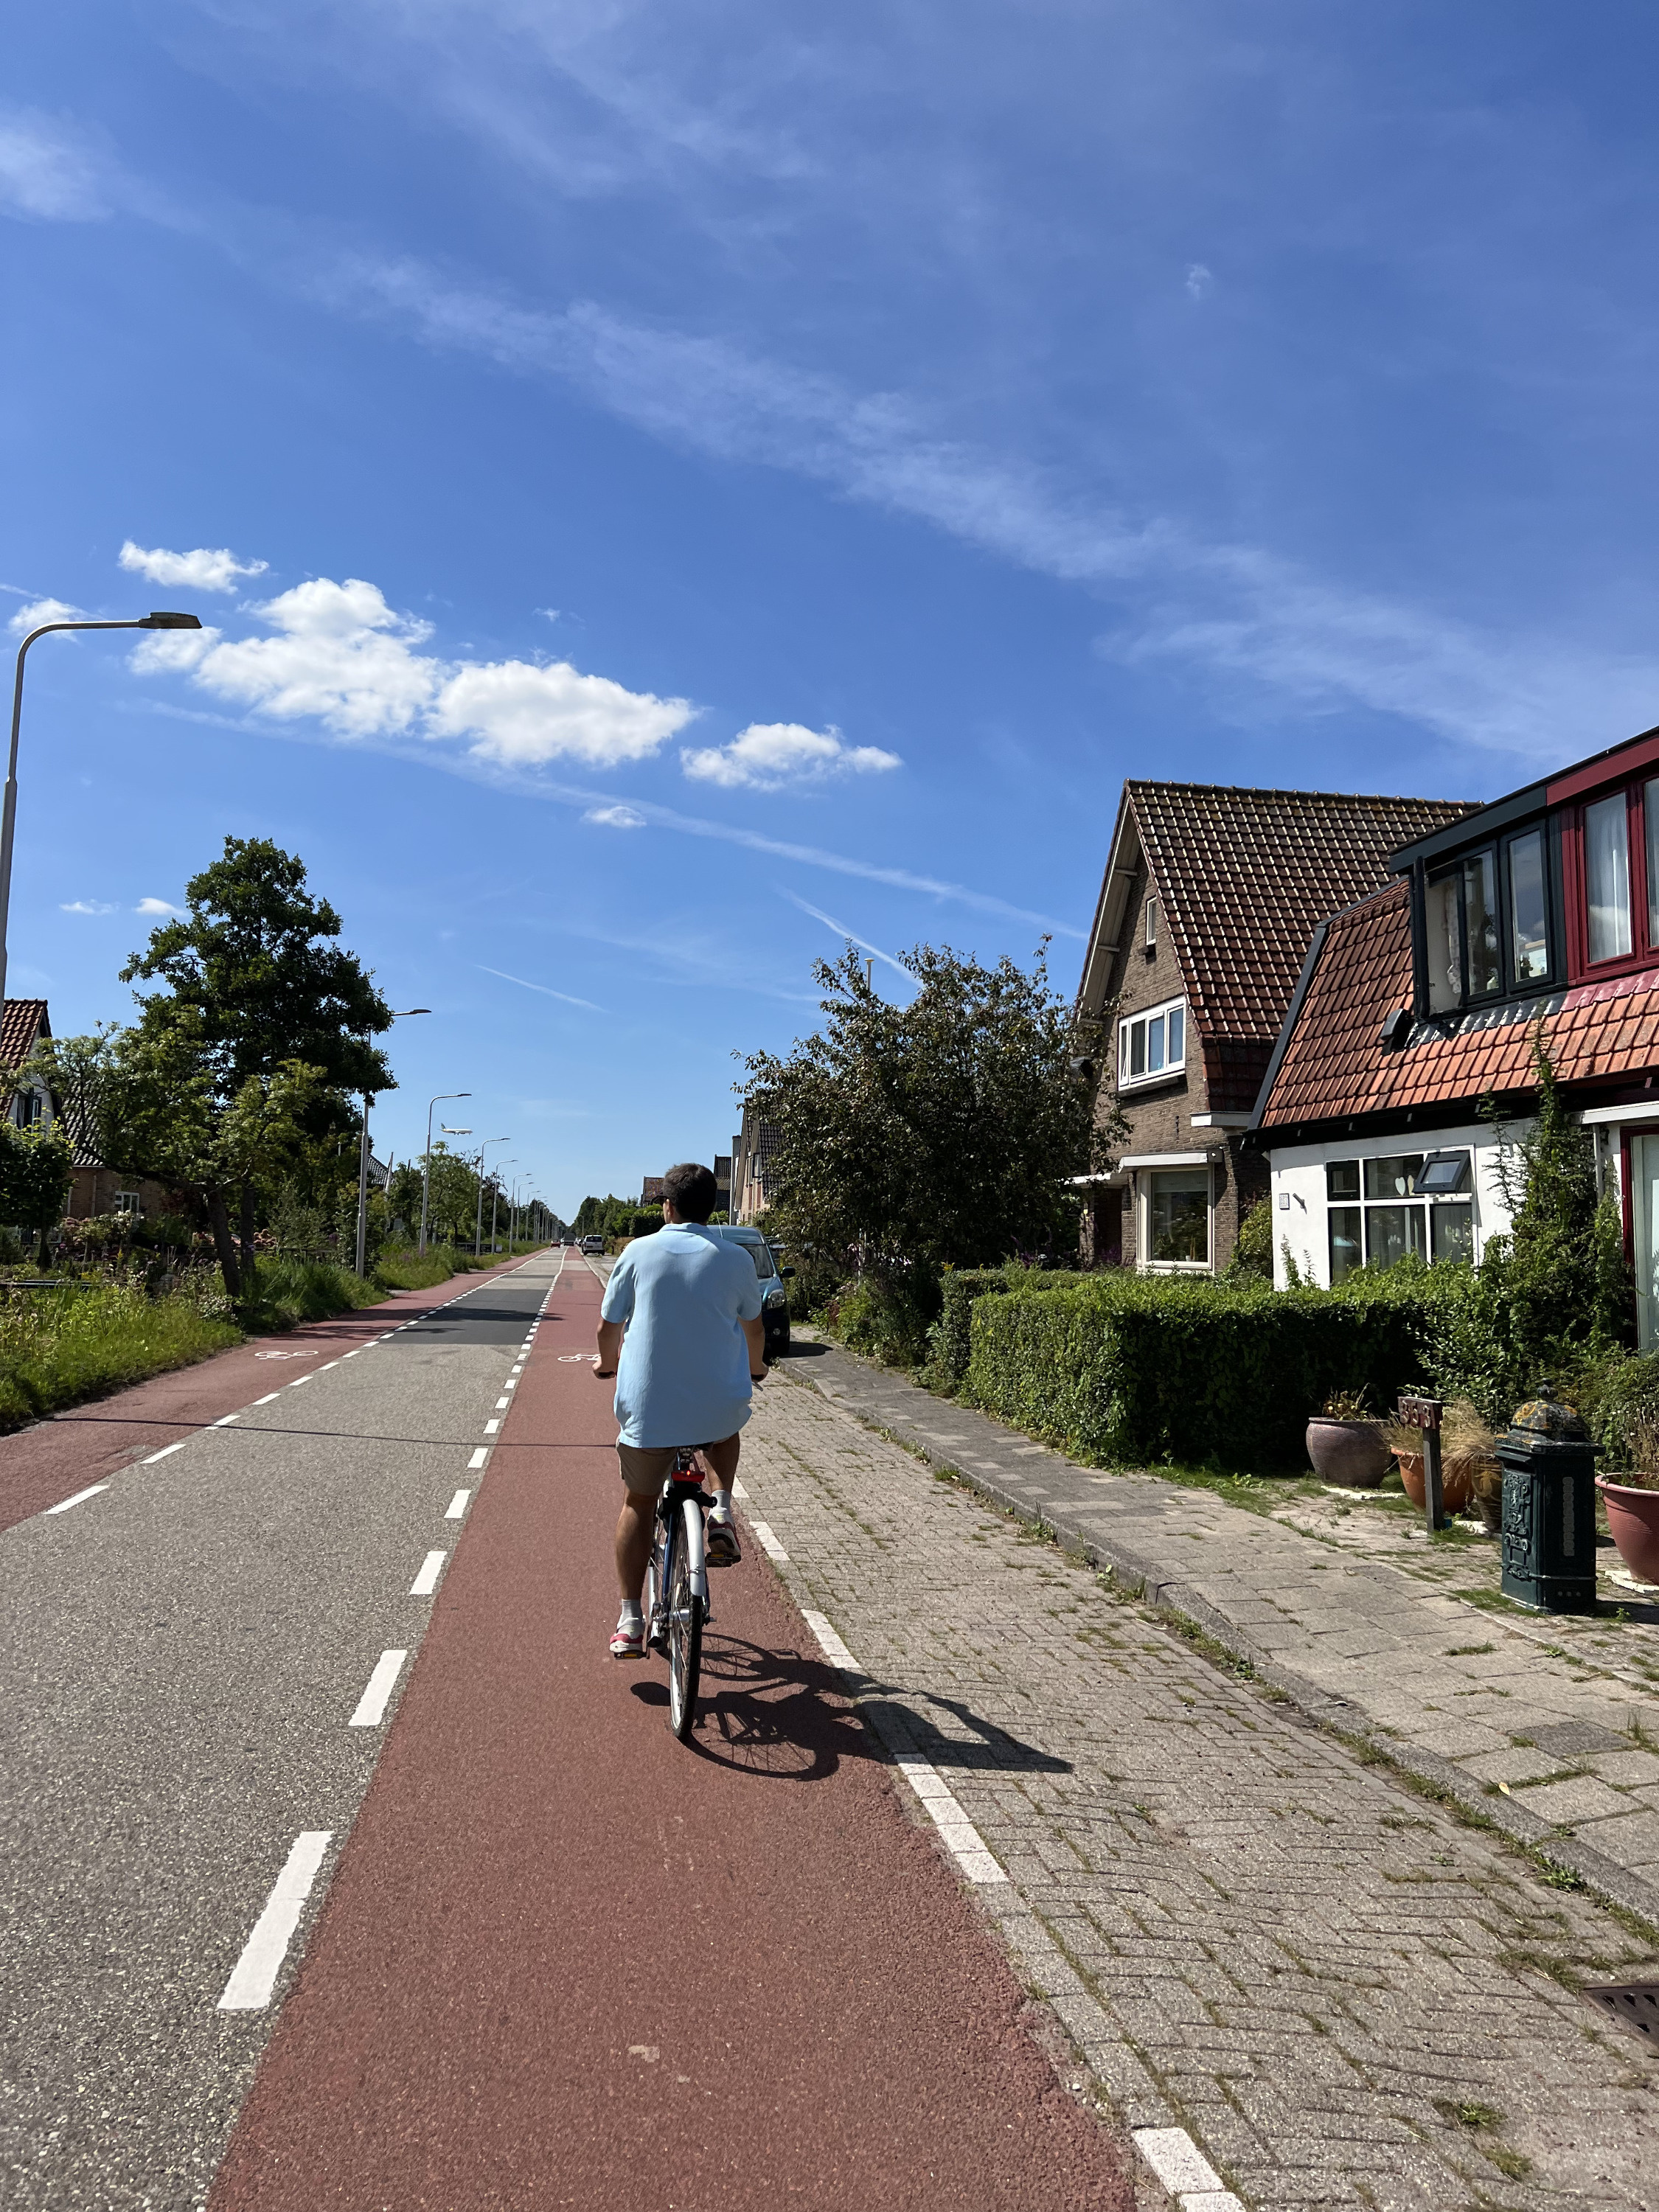 Популярное средство передвижения по Амстердаму — велосипед